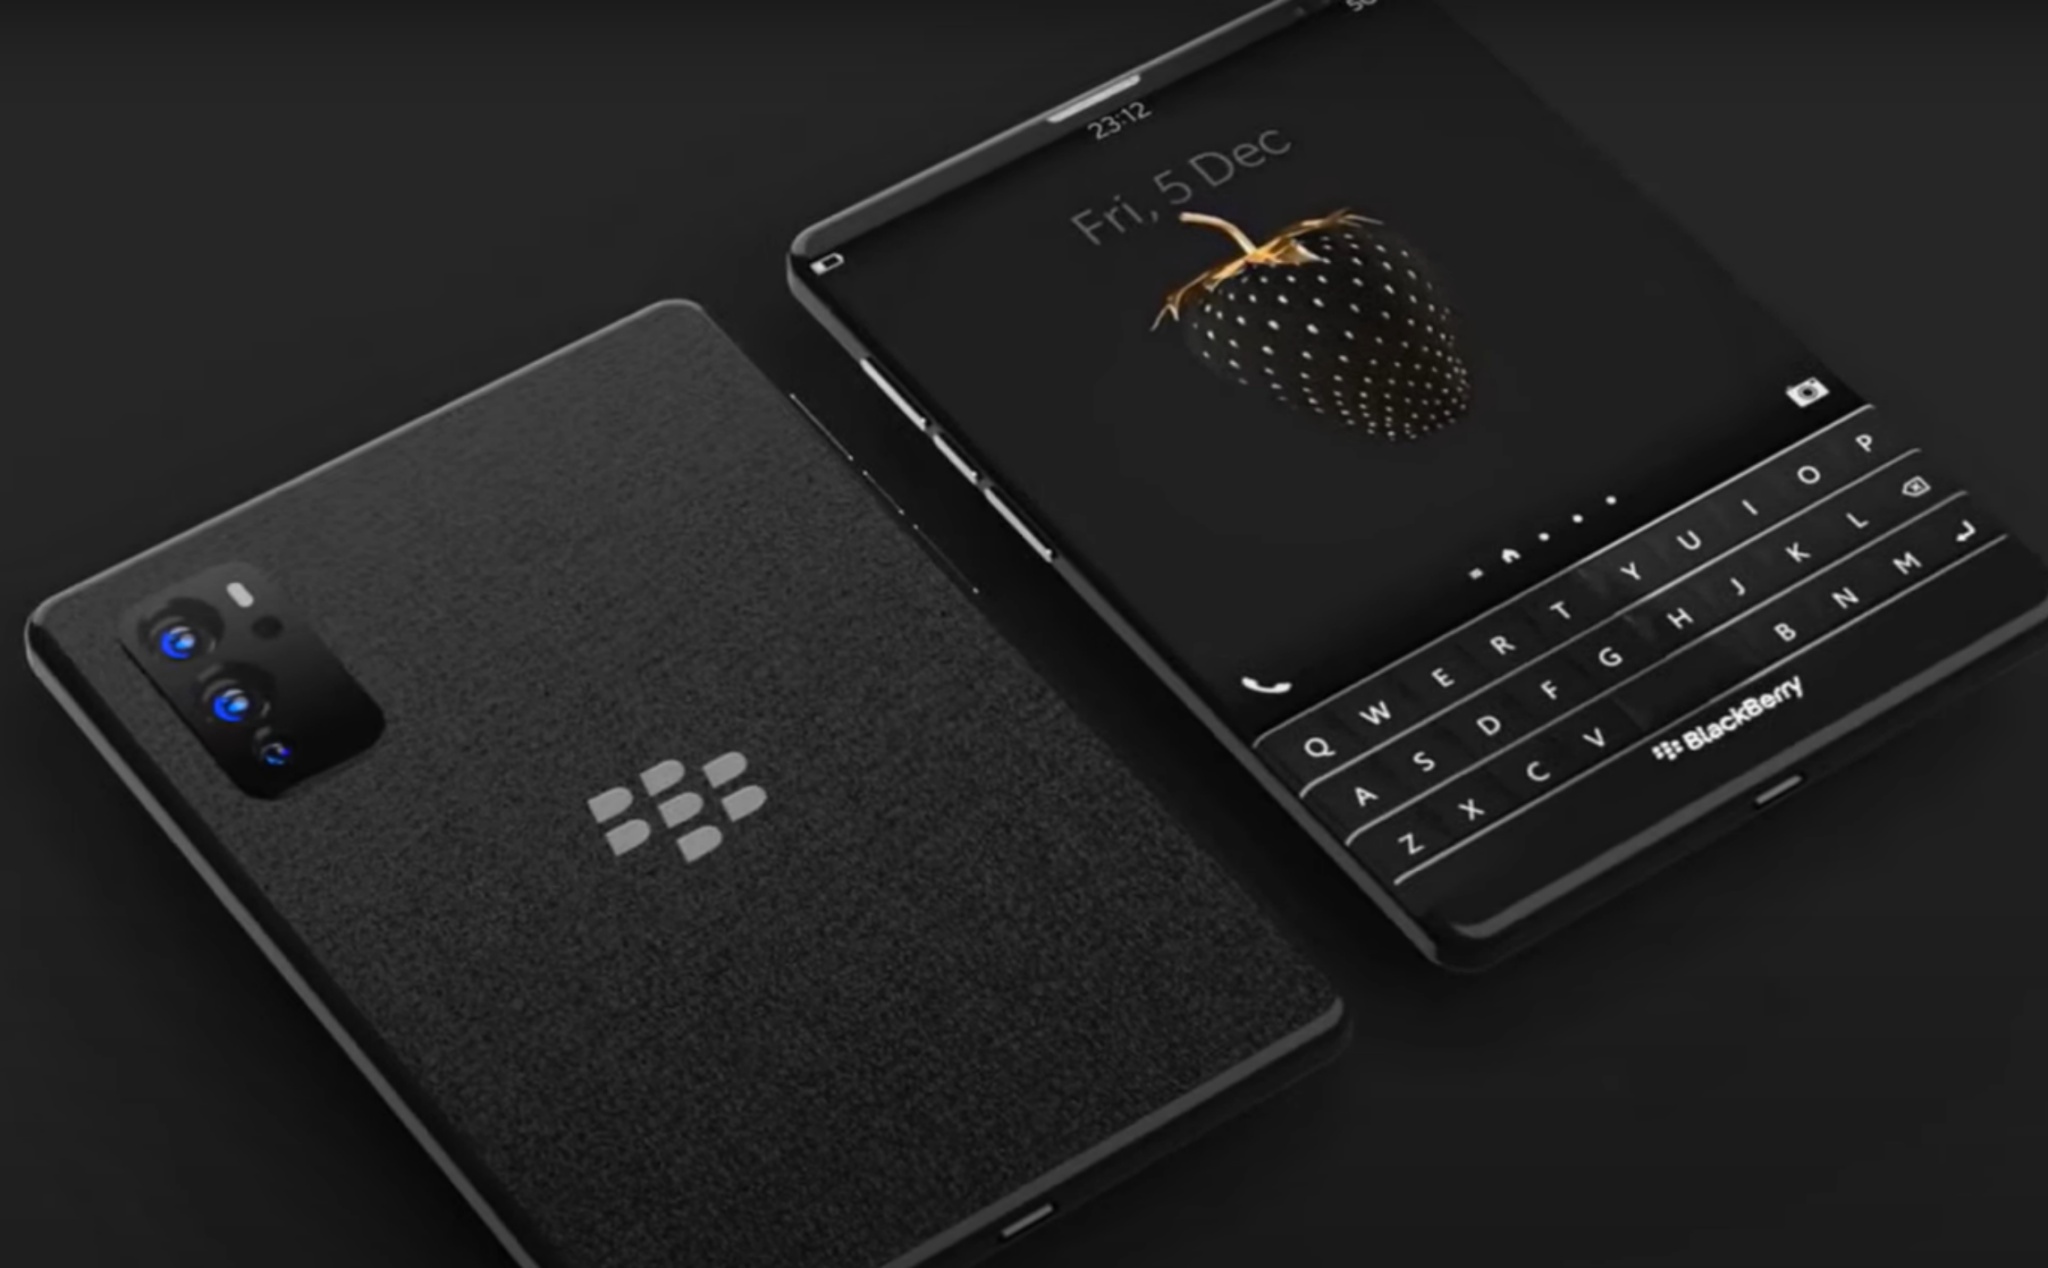 Ý tưởng về chiếc BlackBerry Passport 2 5G trong mơ sẽ ra mắt năm nay